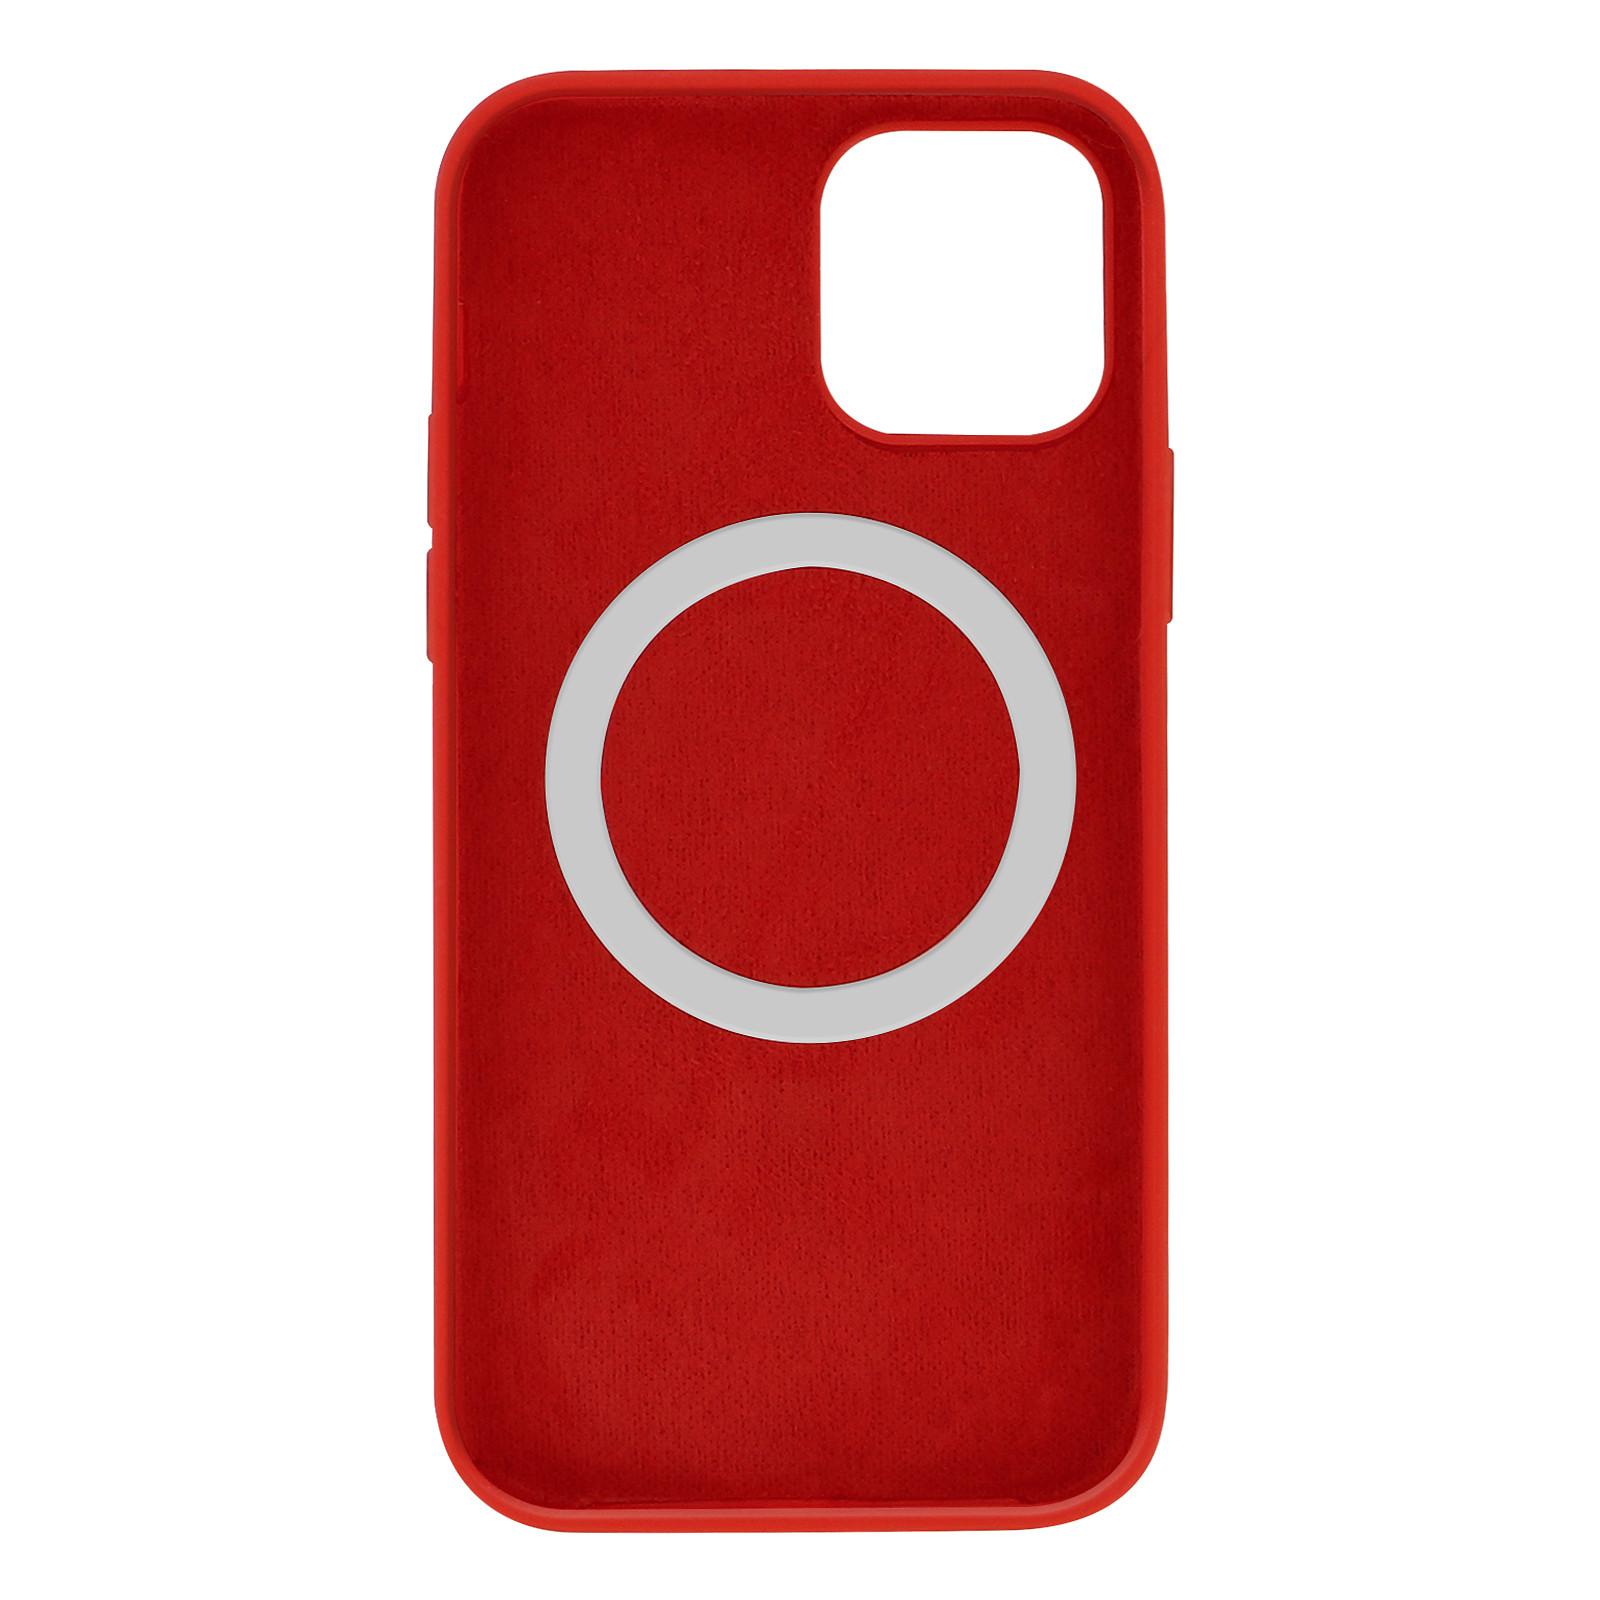 Avizar Coque pour iPhone 12 Pro Max Magsafe Silicone semi-rigide Anti-traces Rouge - Coque telephone Avizar